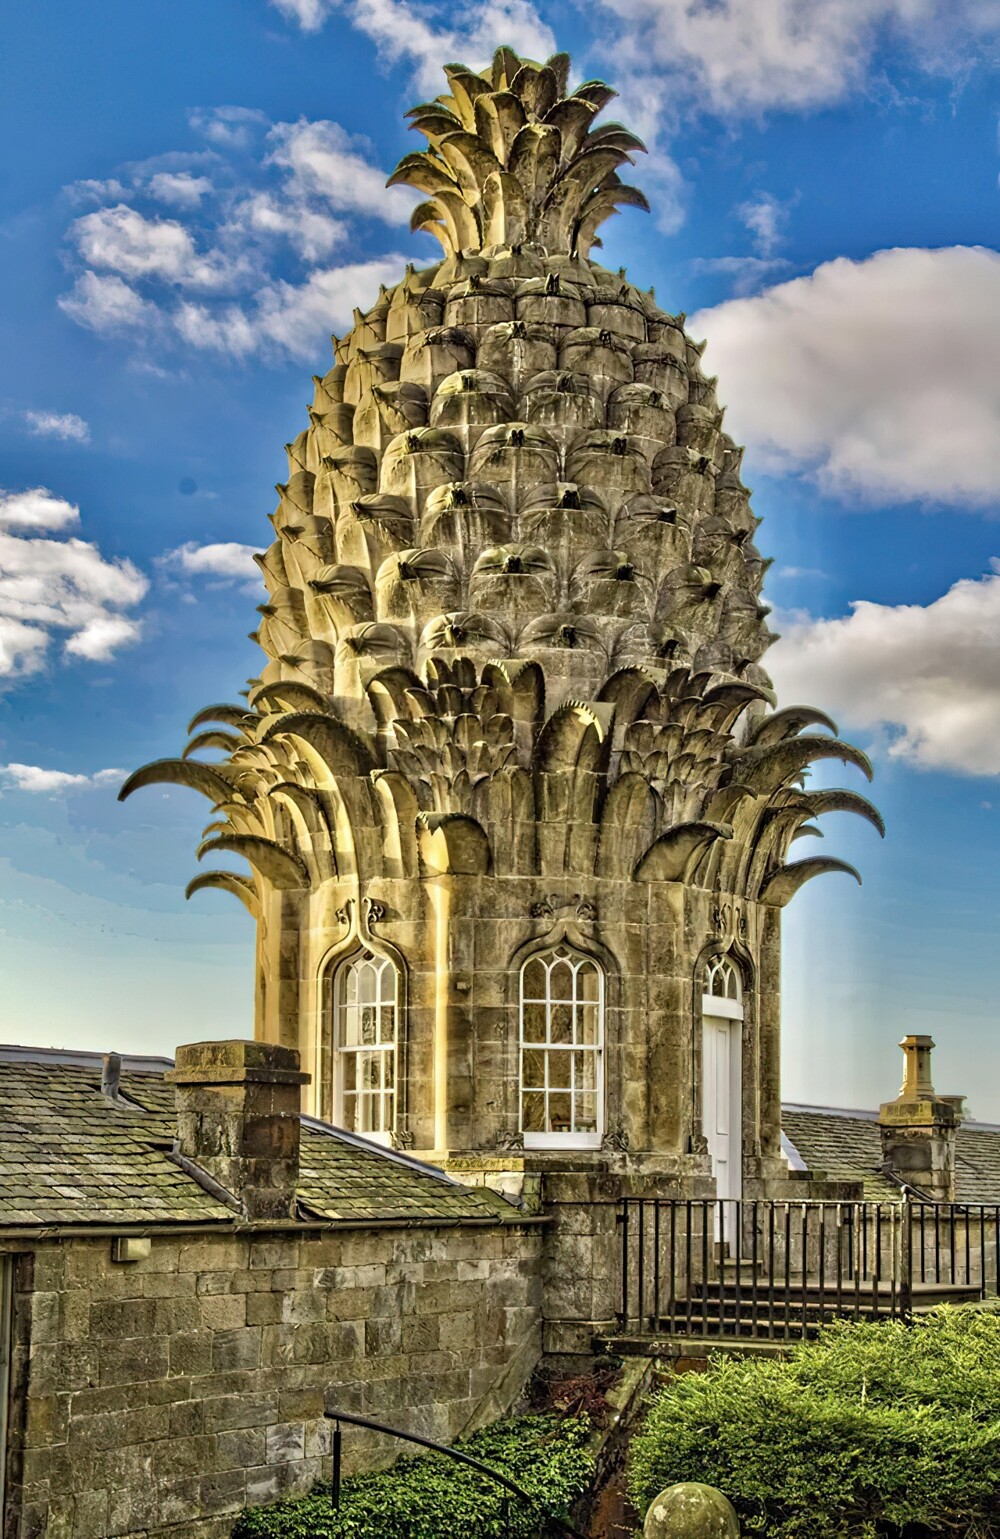 7. Купол Данмор-хауса в виде ананаса. Данмор, Шотландия, 1761-1776 гг.